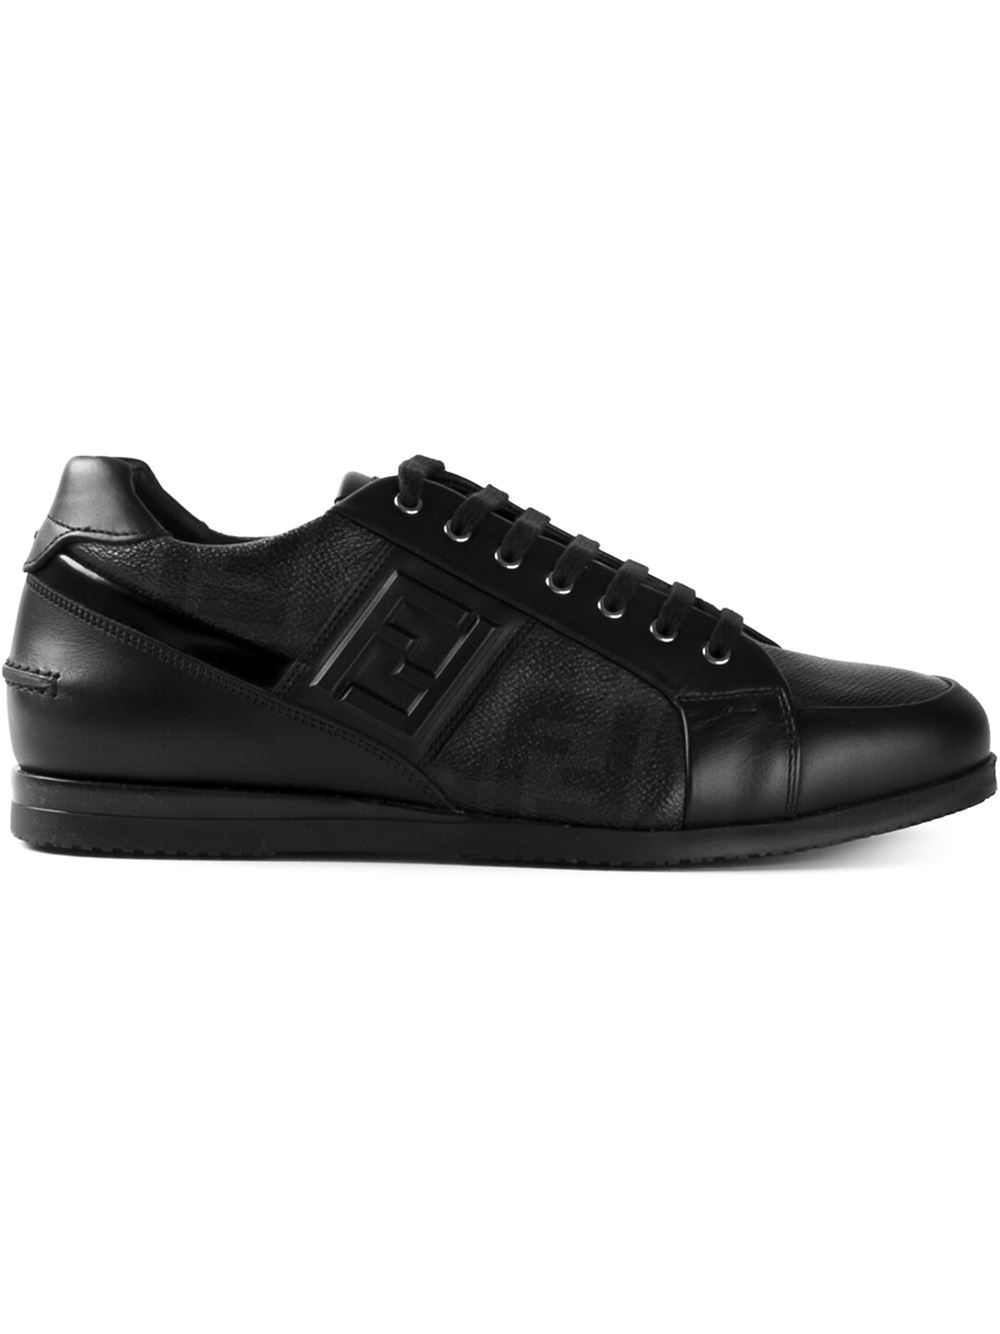 Lyst - Fendi 'wimbledon' Sneakers in Black for Men